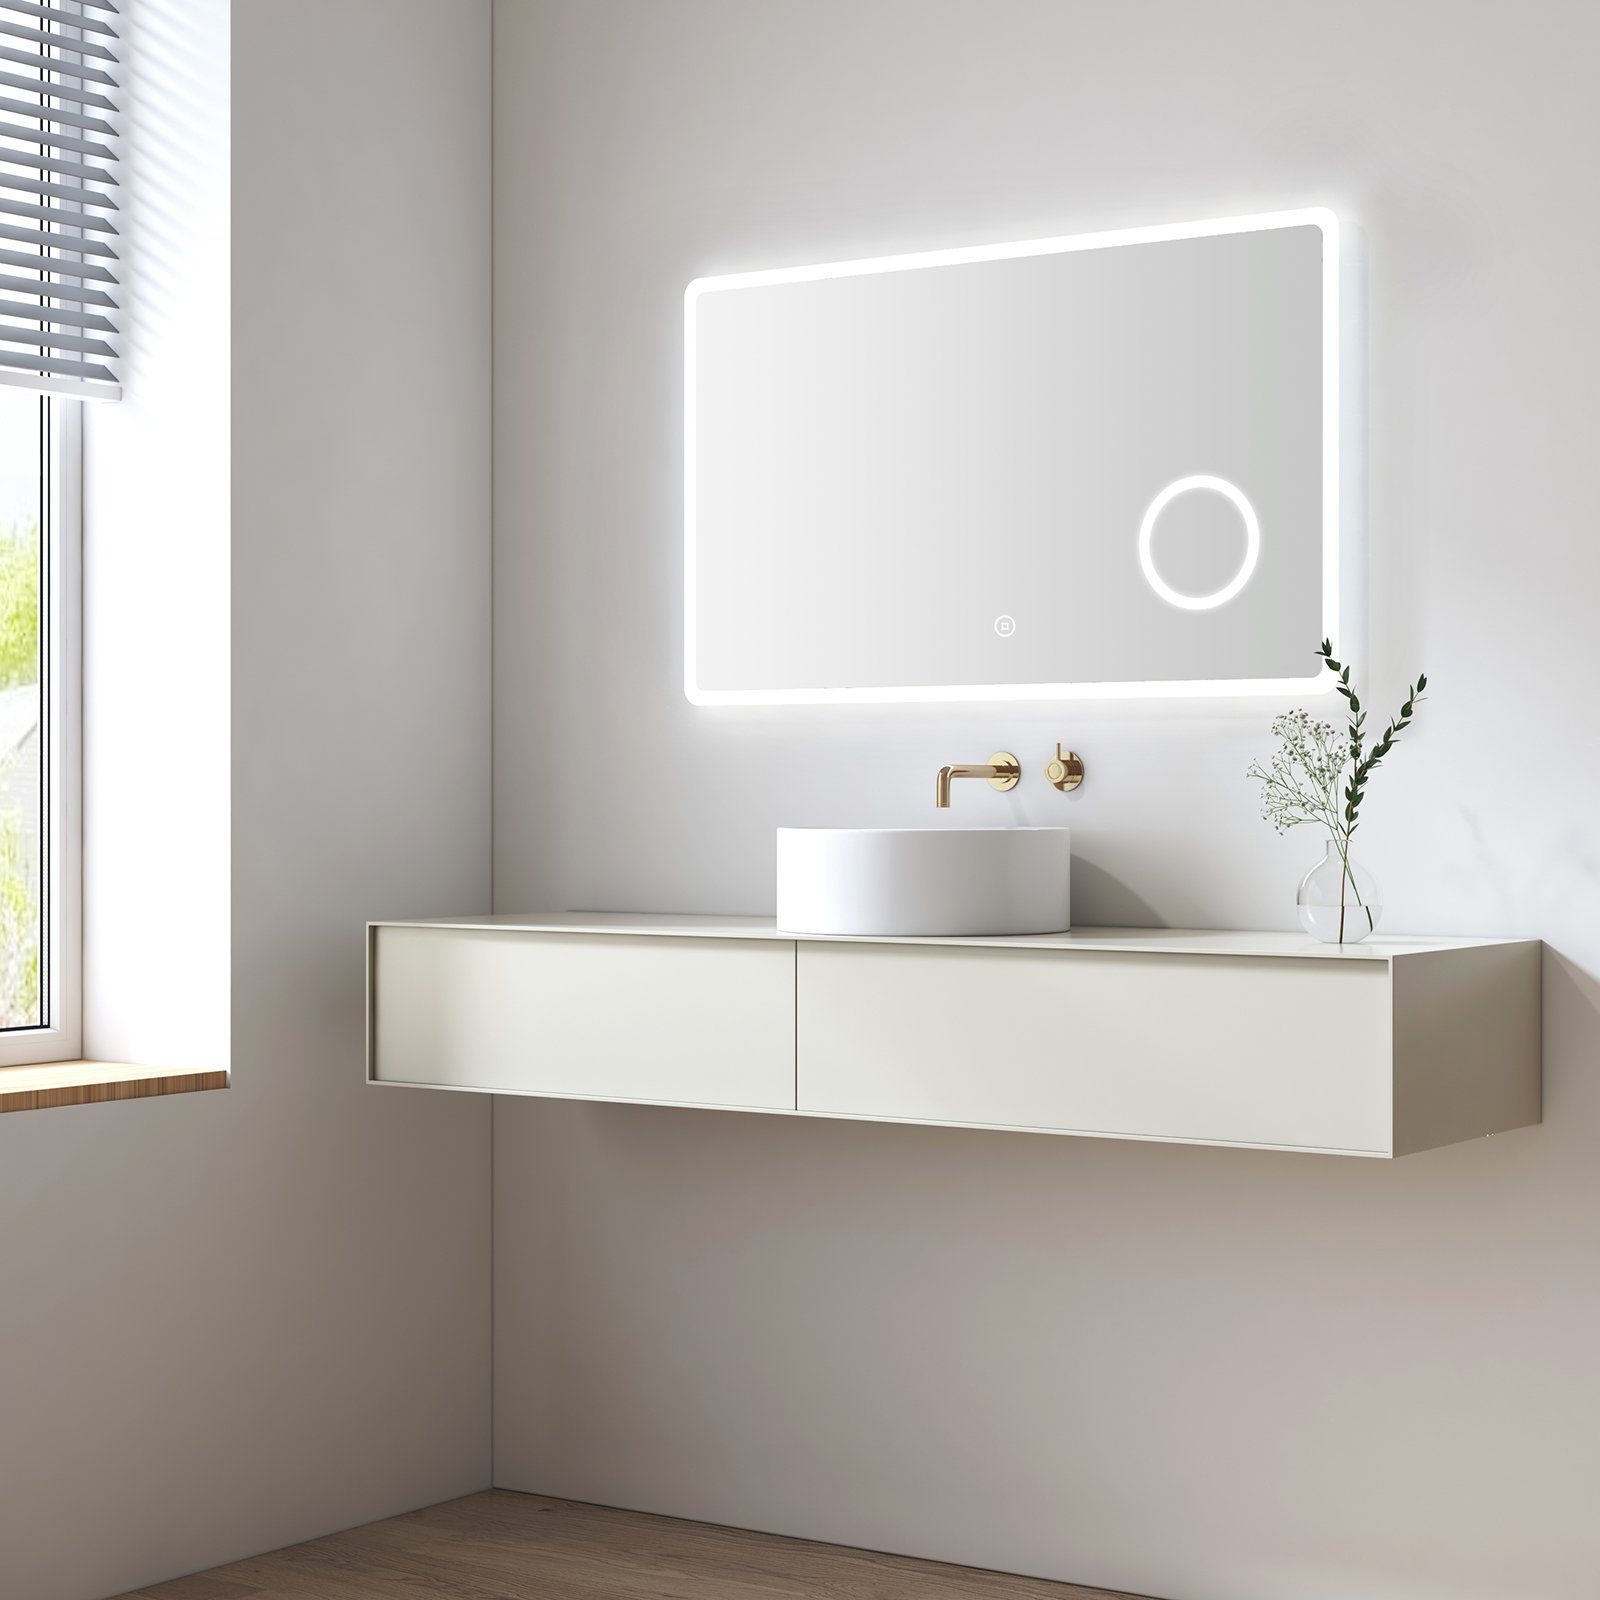 S'AFIELINA Badspiegel Badspiegel mit Beleuchtung Wandspiegel Led Badspiegel, 100x60cm,Kaltweiß 6500K,Touchschalter,3-fach Vergrößerung,IP 54